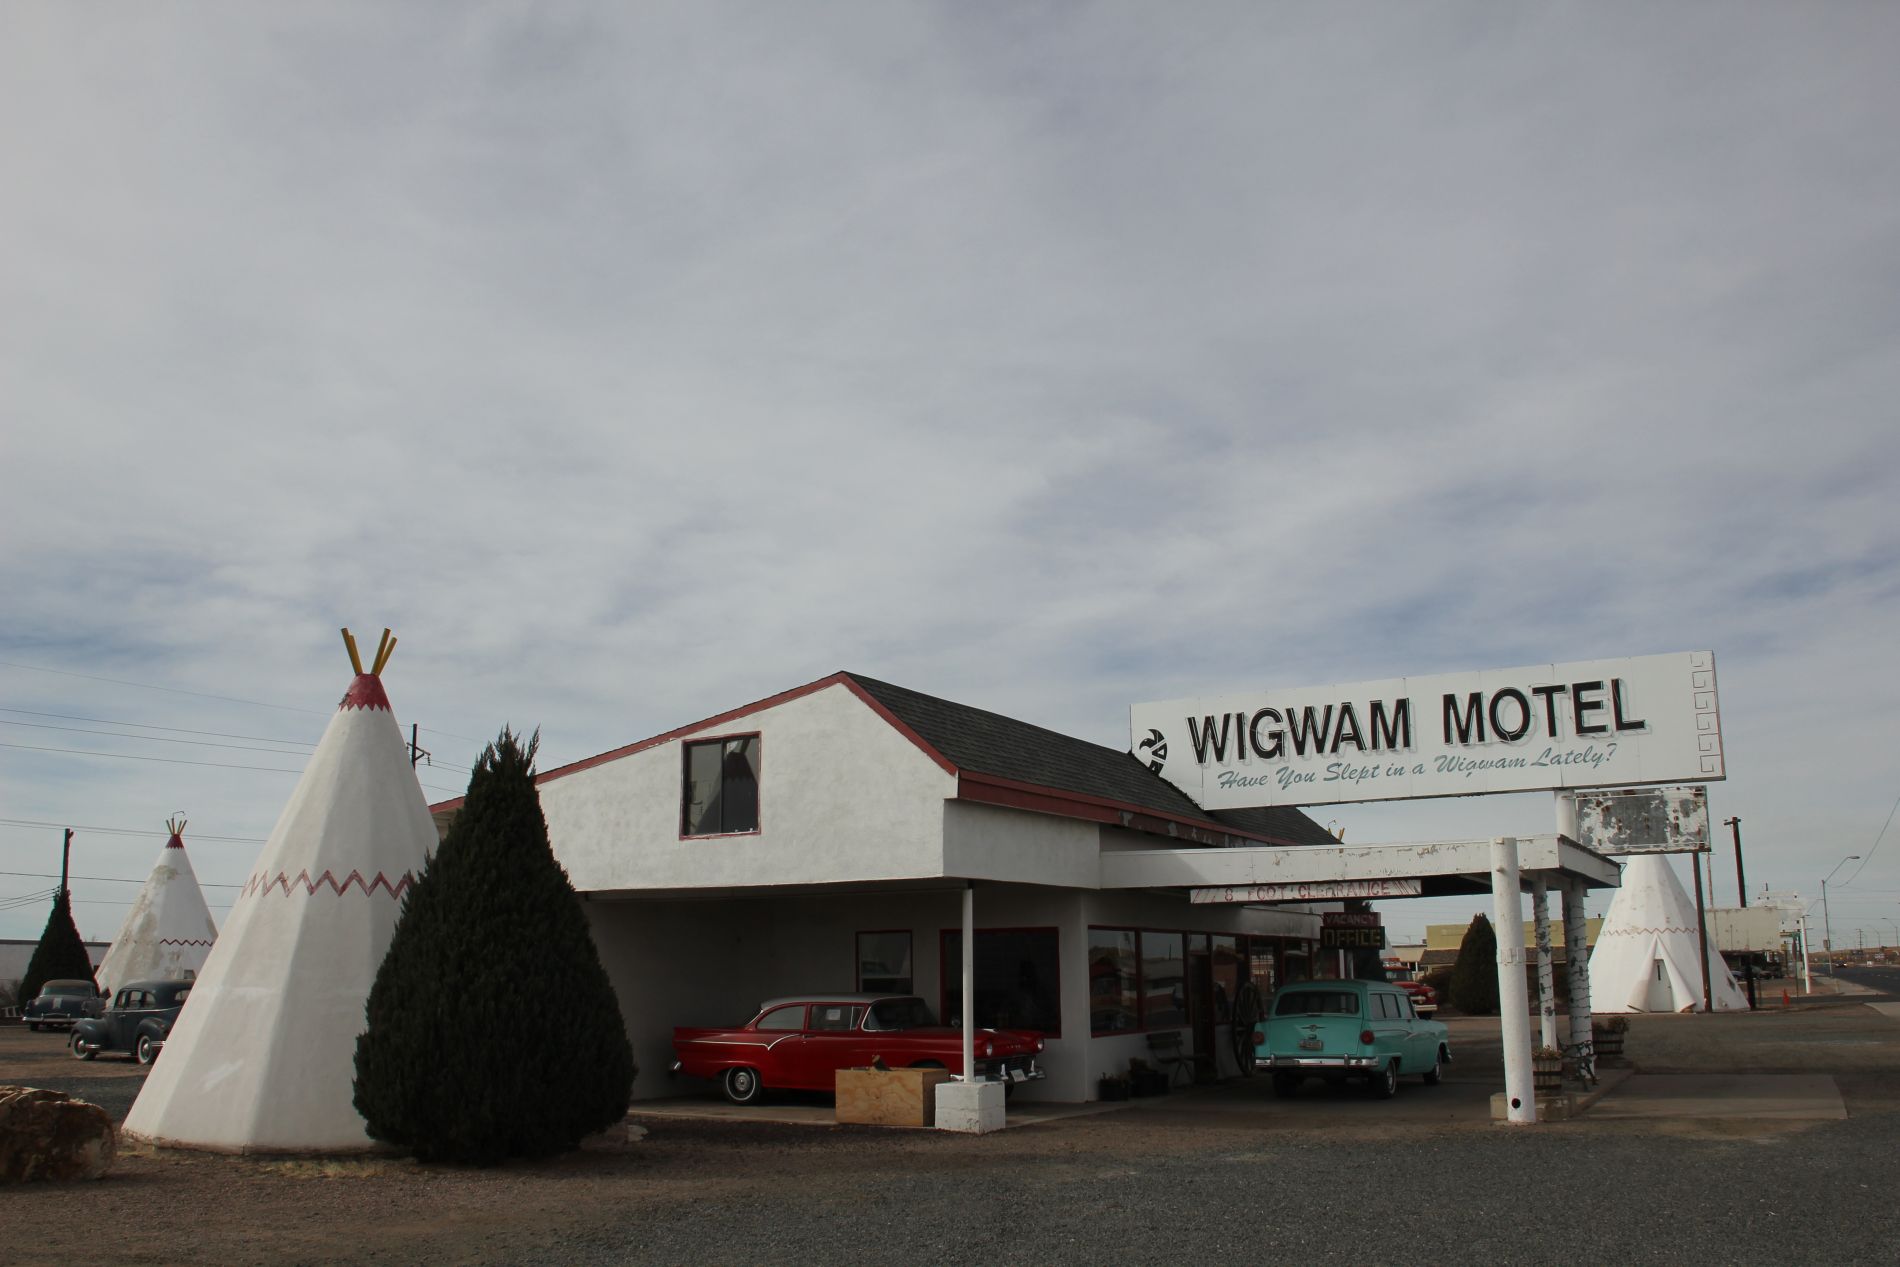 Wigwam Motel in Holbook, Arizona